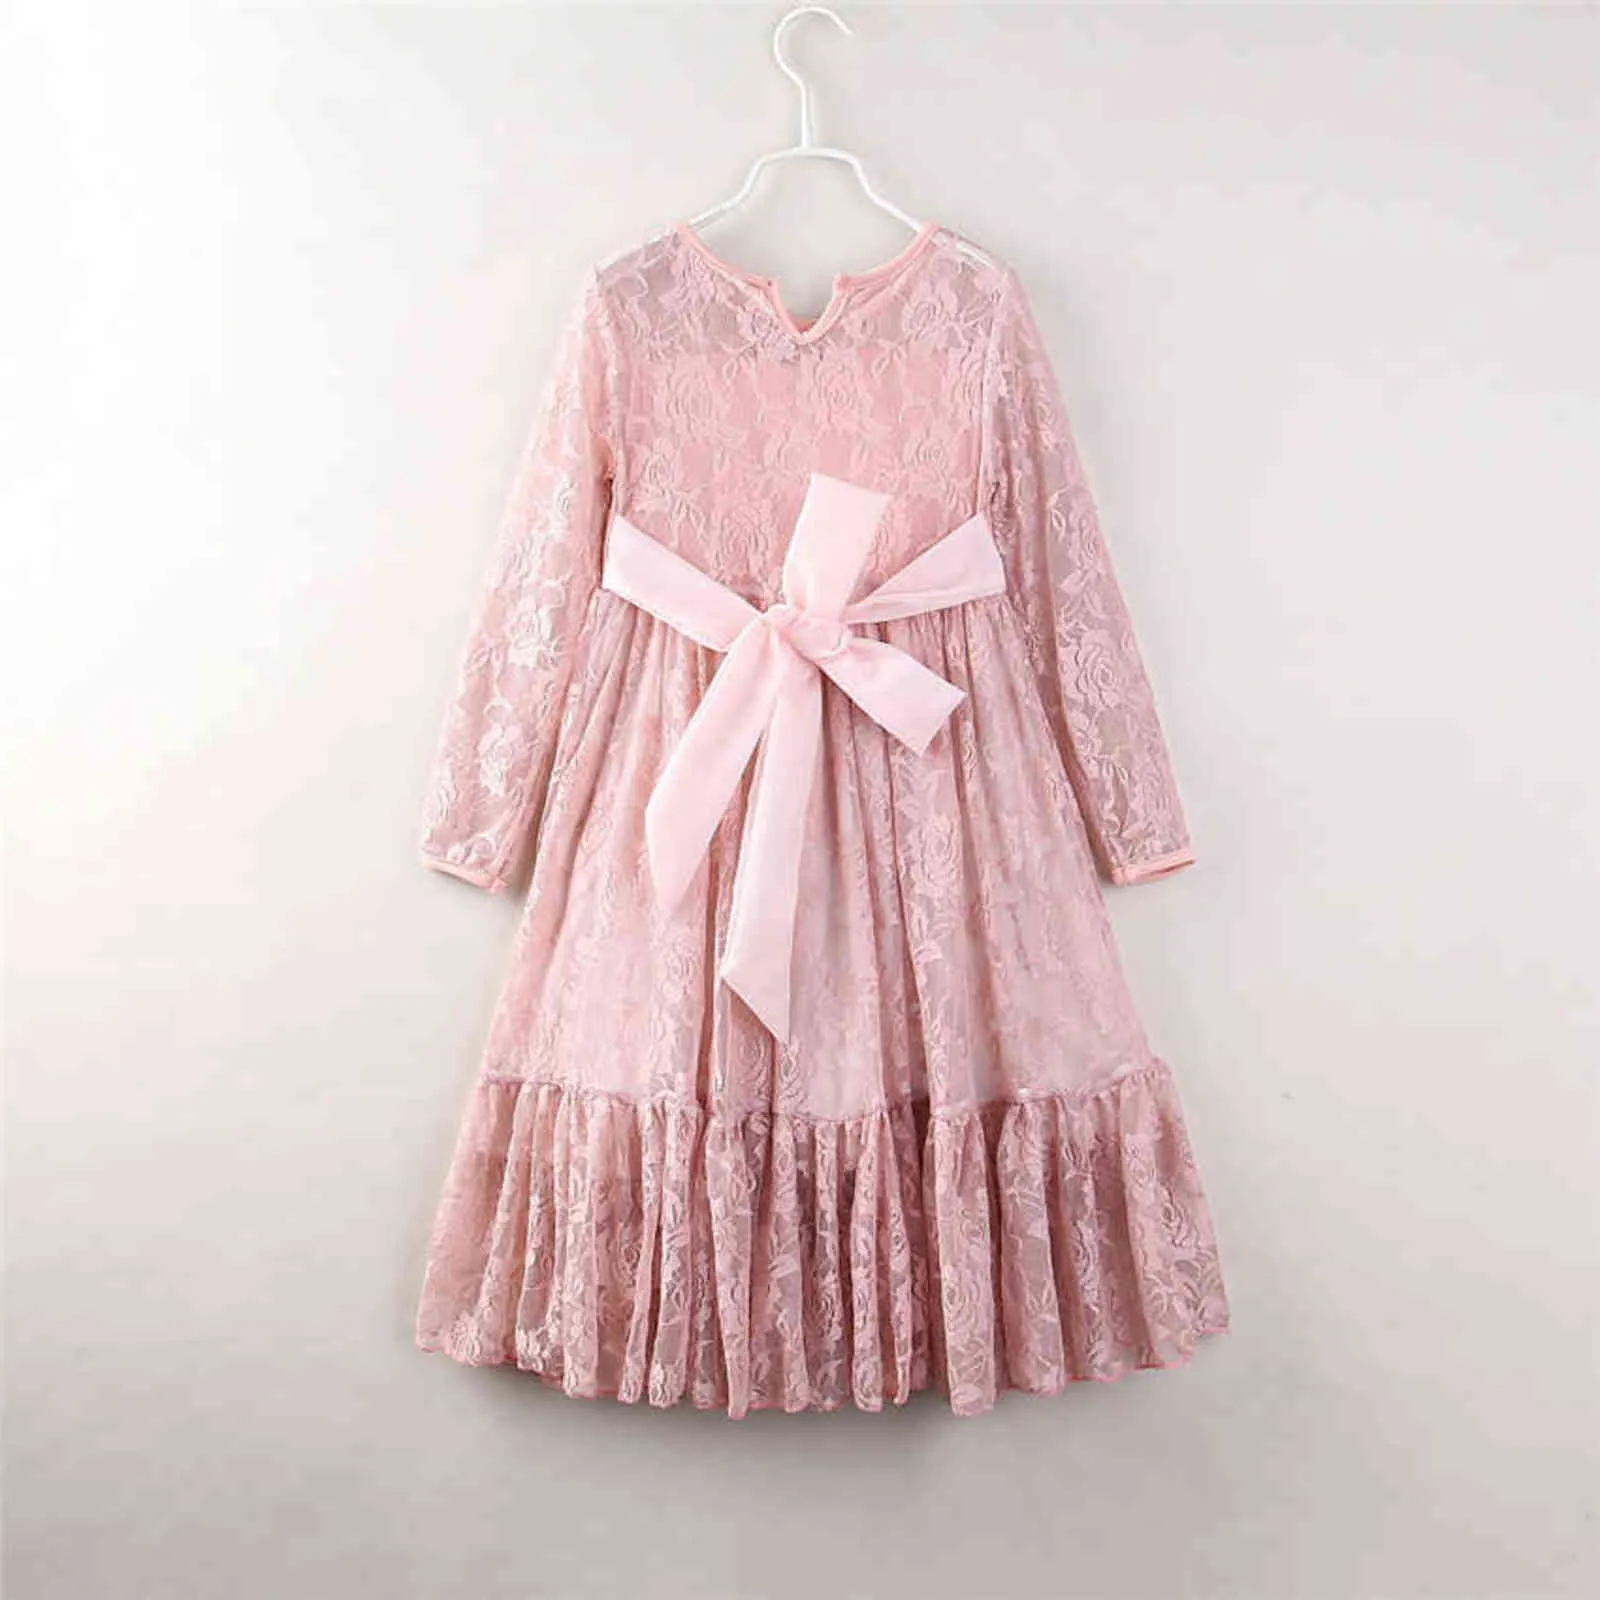 Crianças primavera vestidos de manga comprida para meninas rosa laço o-pescoço menina festa curva princesa vestido criança crianças adolescentes roupas g1129